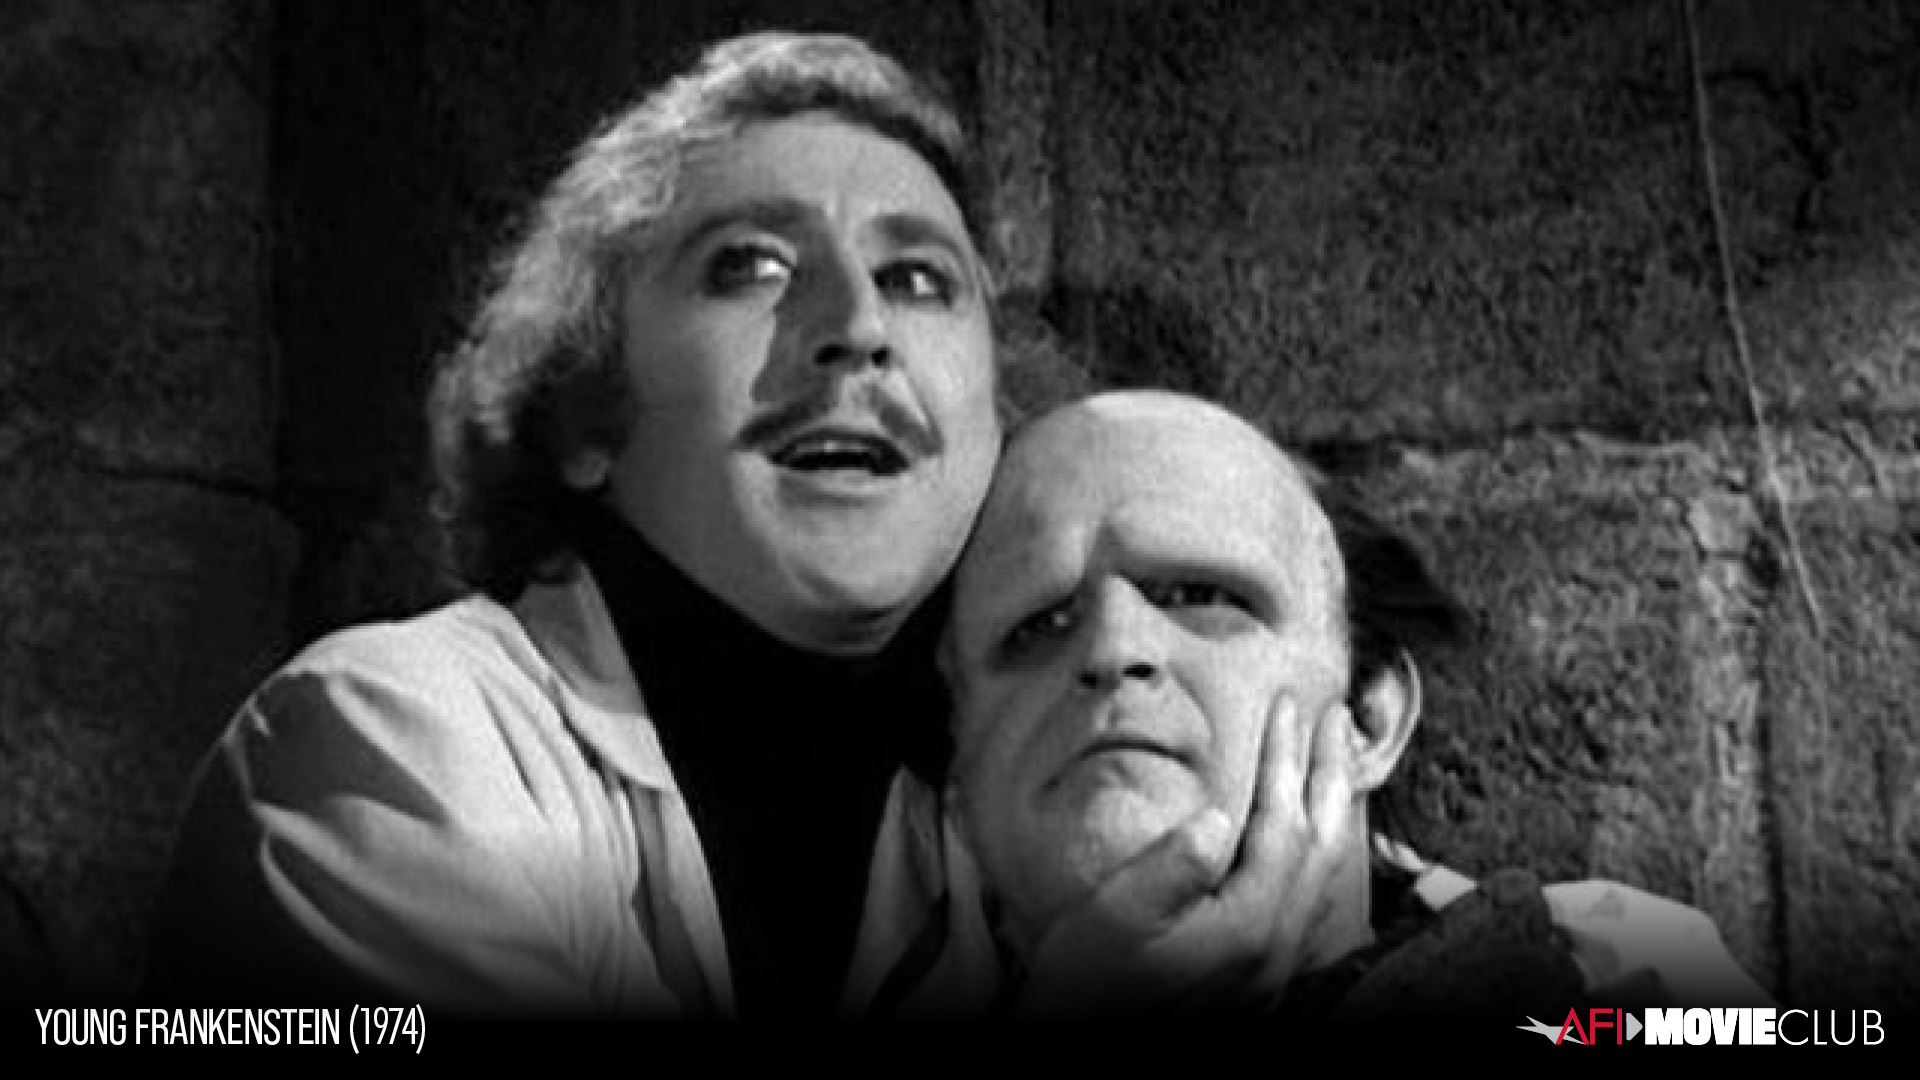 Young Frankenstein Film Still - Gene Wilder and Peter Boyle